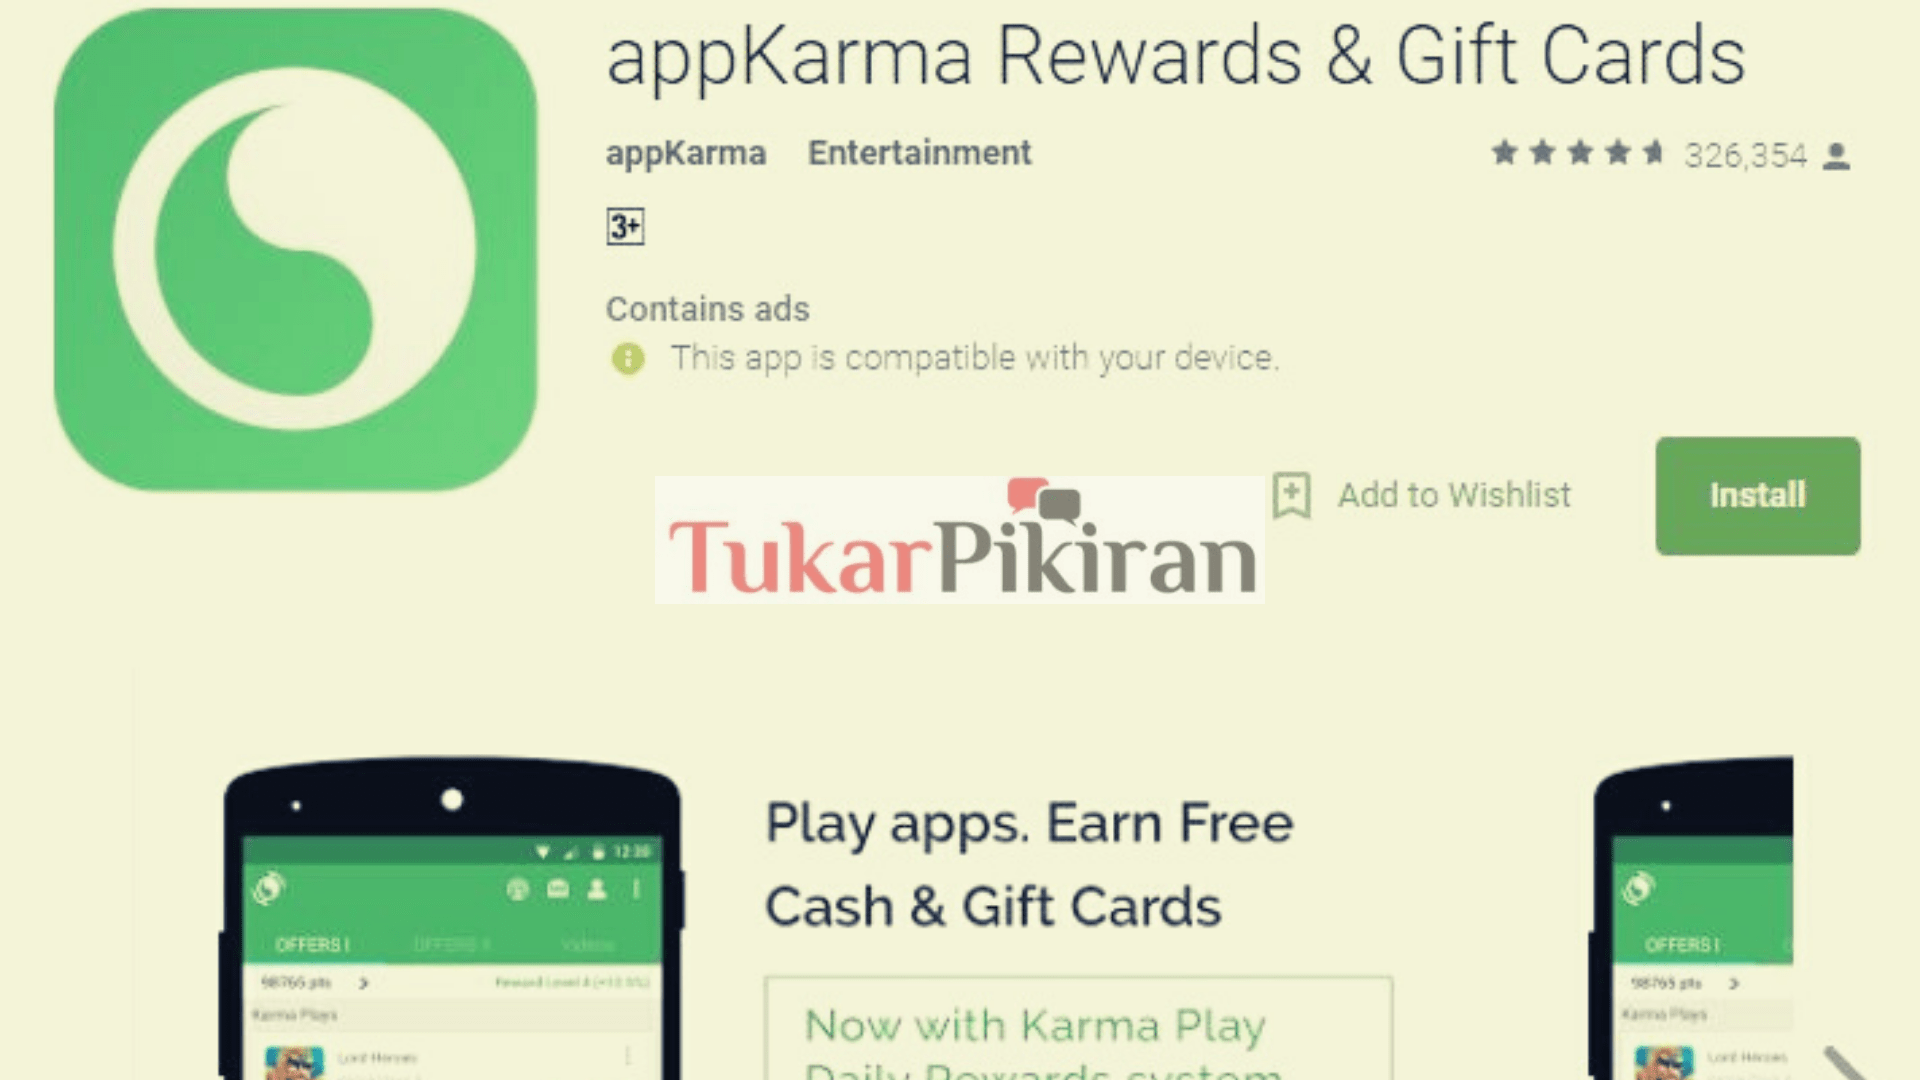 appKarma Reward & Gift Card